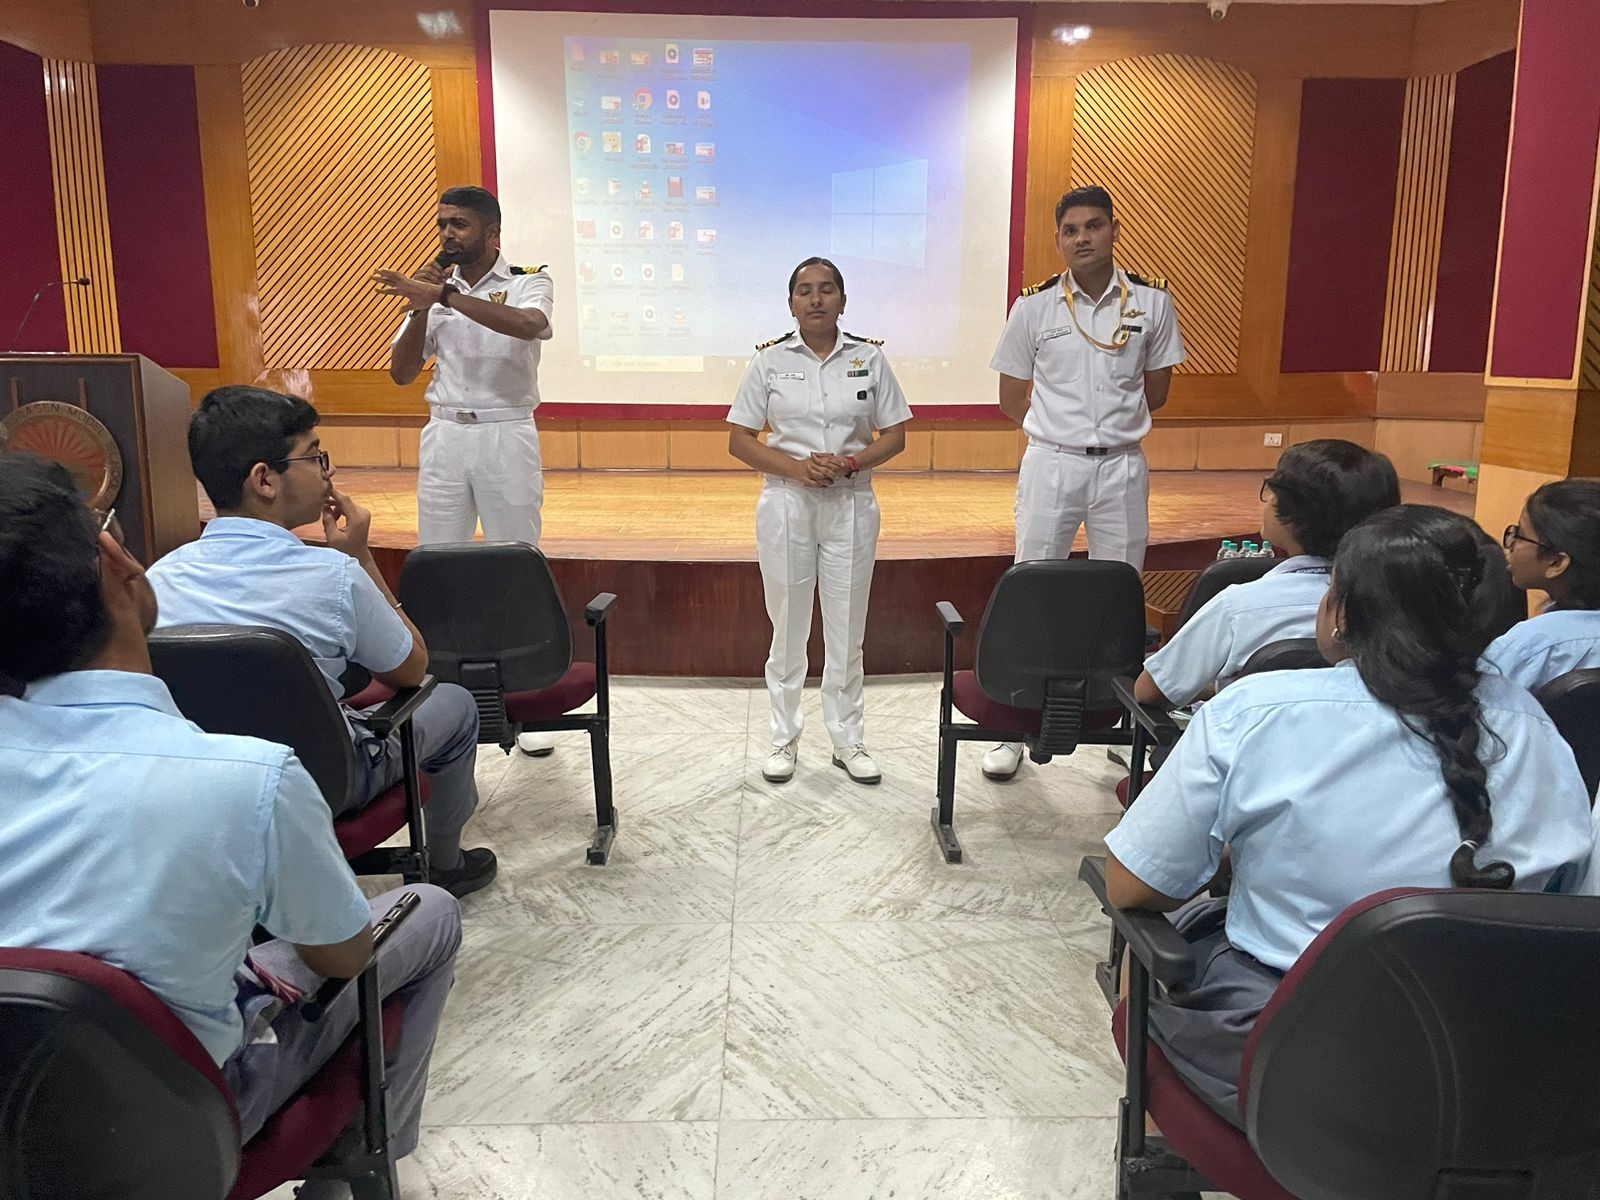 Workshop by Naval officers